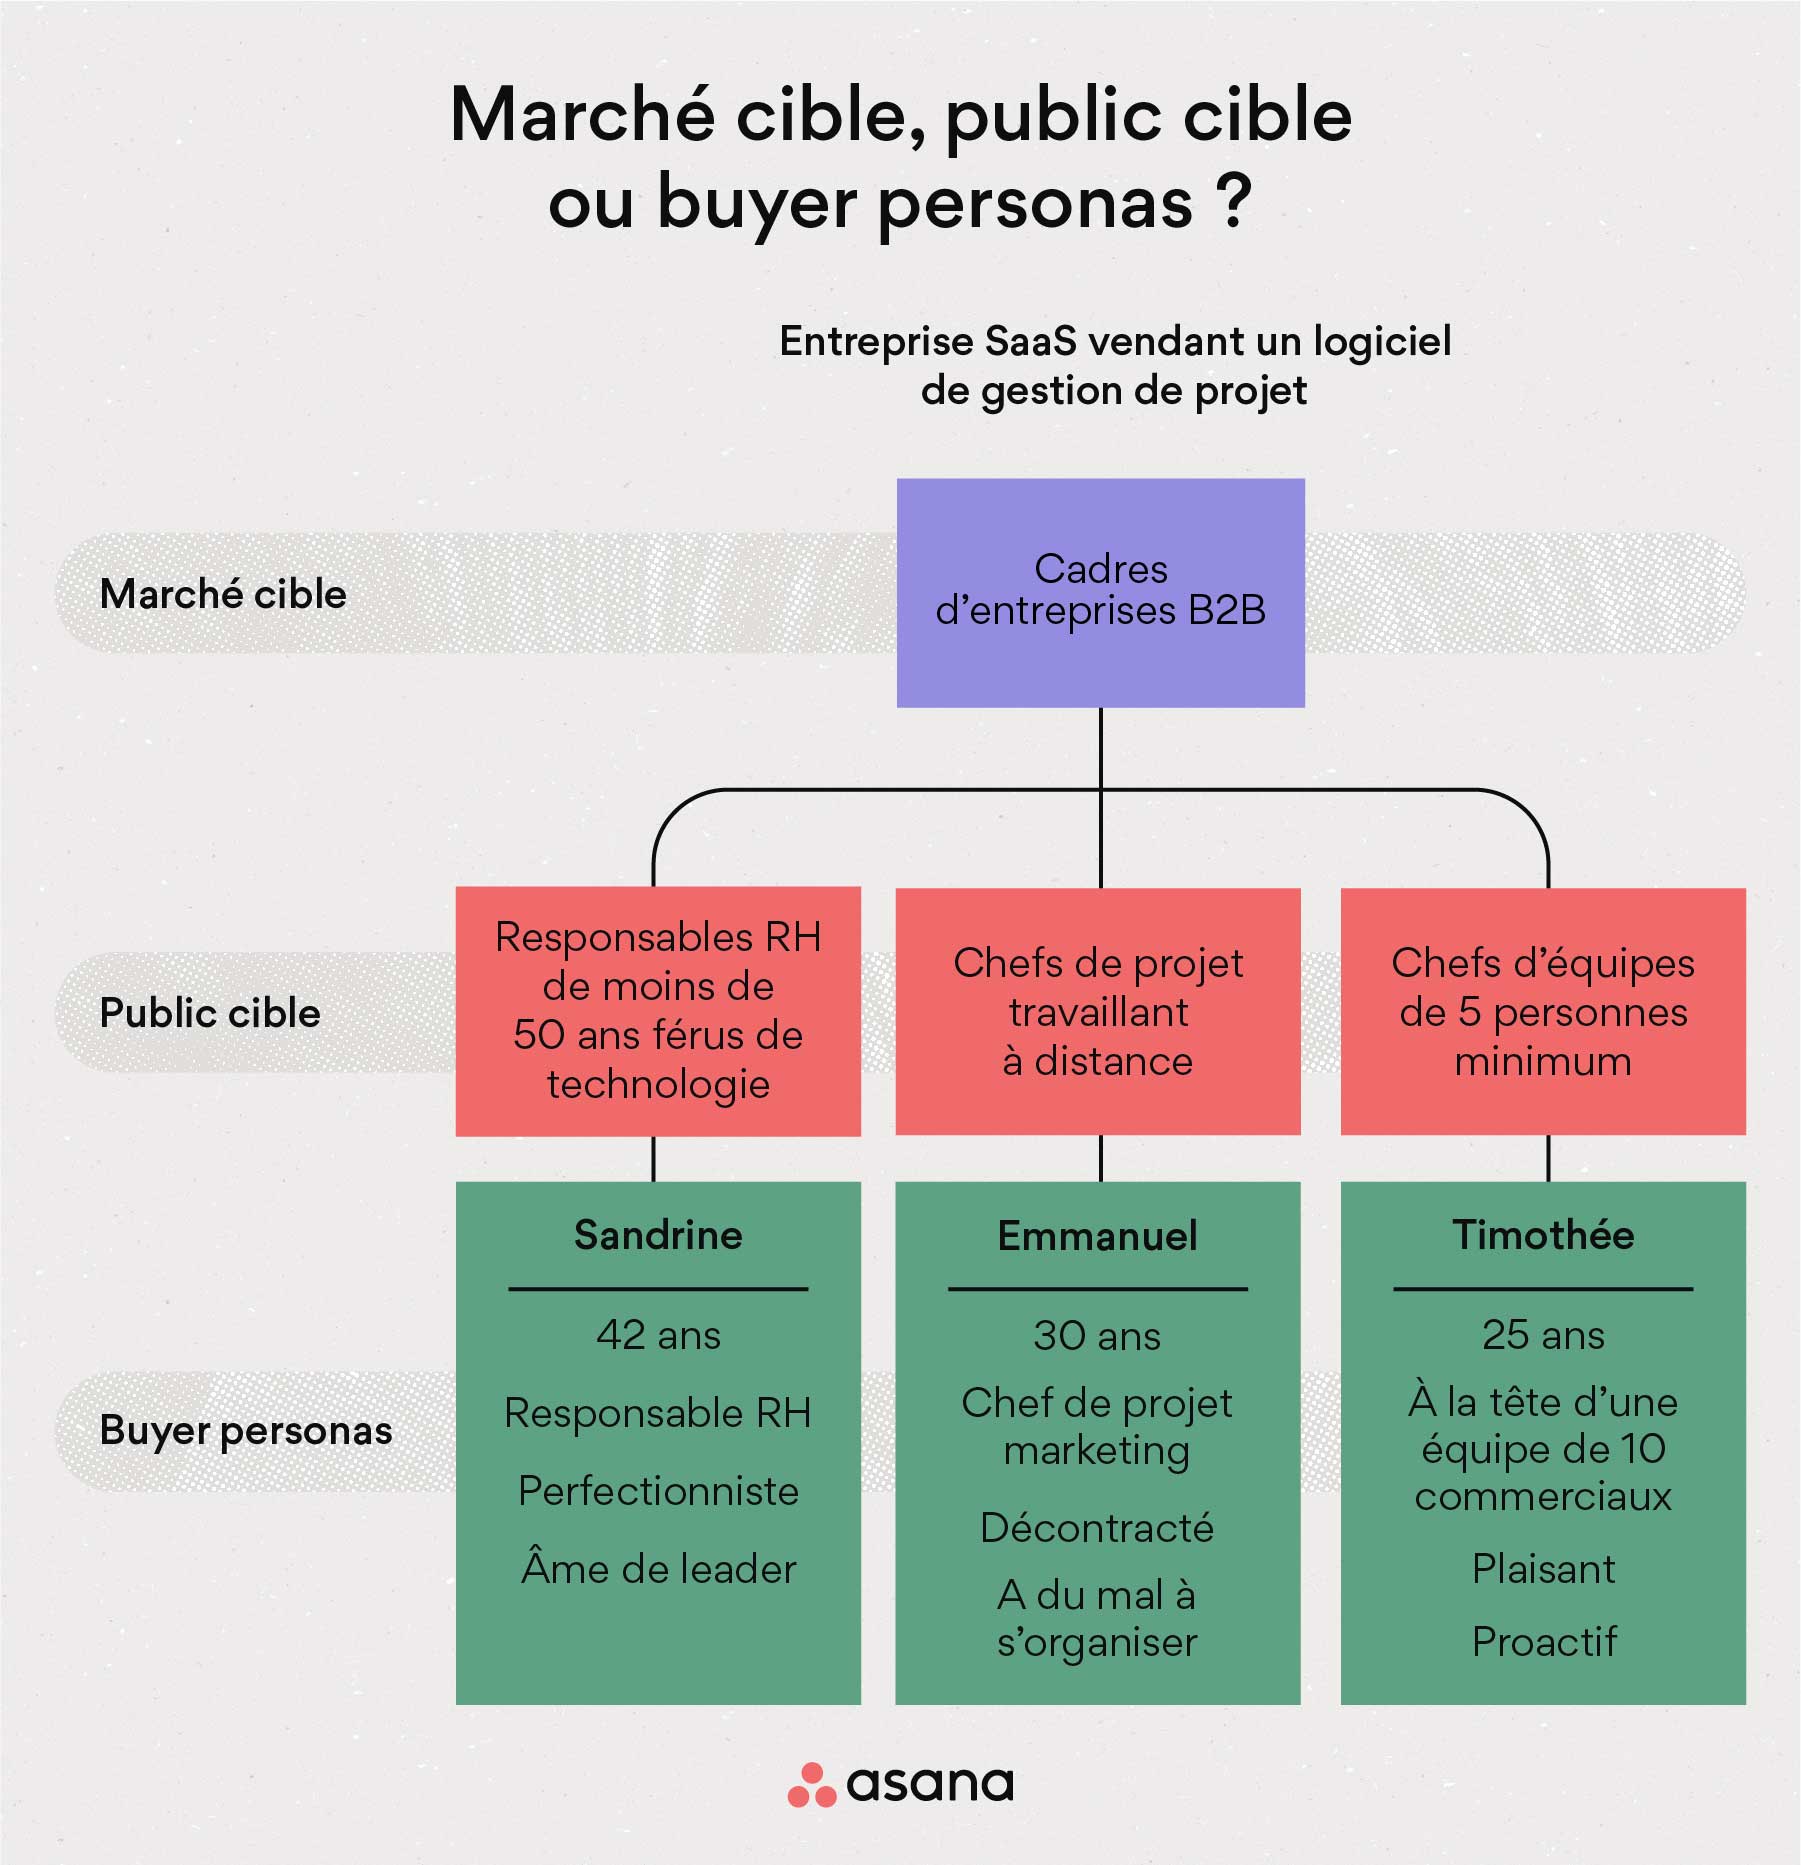 [Illustration intégrée] Marché cible, public cible ou buyer personas ? (Infographie)